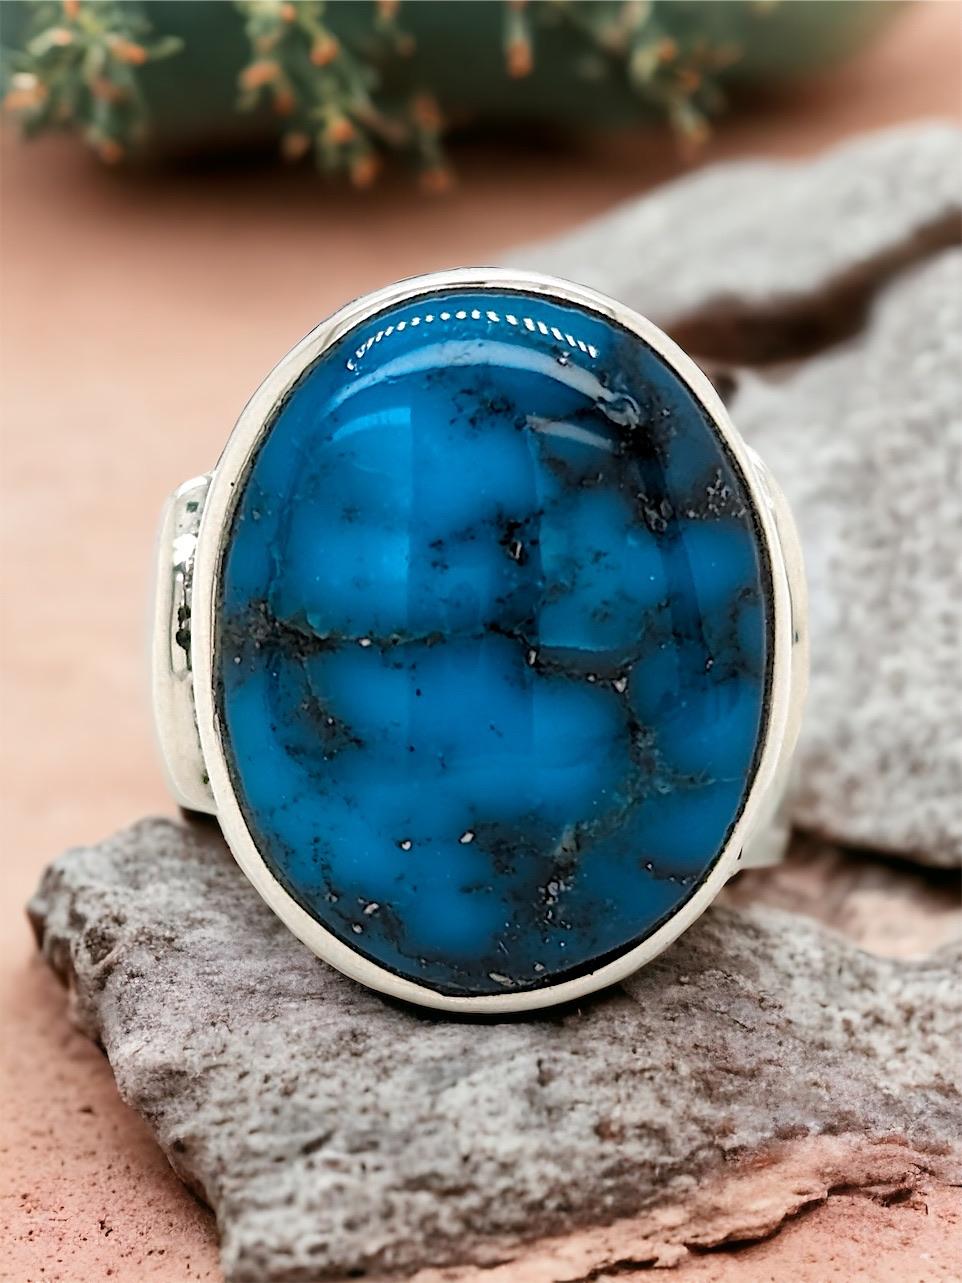 Setzen Sie ein Zeichen mit diesem fesselnden Sterling Silber Ring (Größe 7). Dieser Ring mit dem markanten Kingman-Türkis ist ein wahres Fest der Farben und des südwestlichen Stils.

Aufsehenerregende Schönheit: Die leuchtenden Blautöne und die